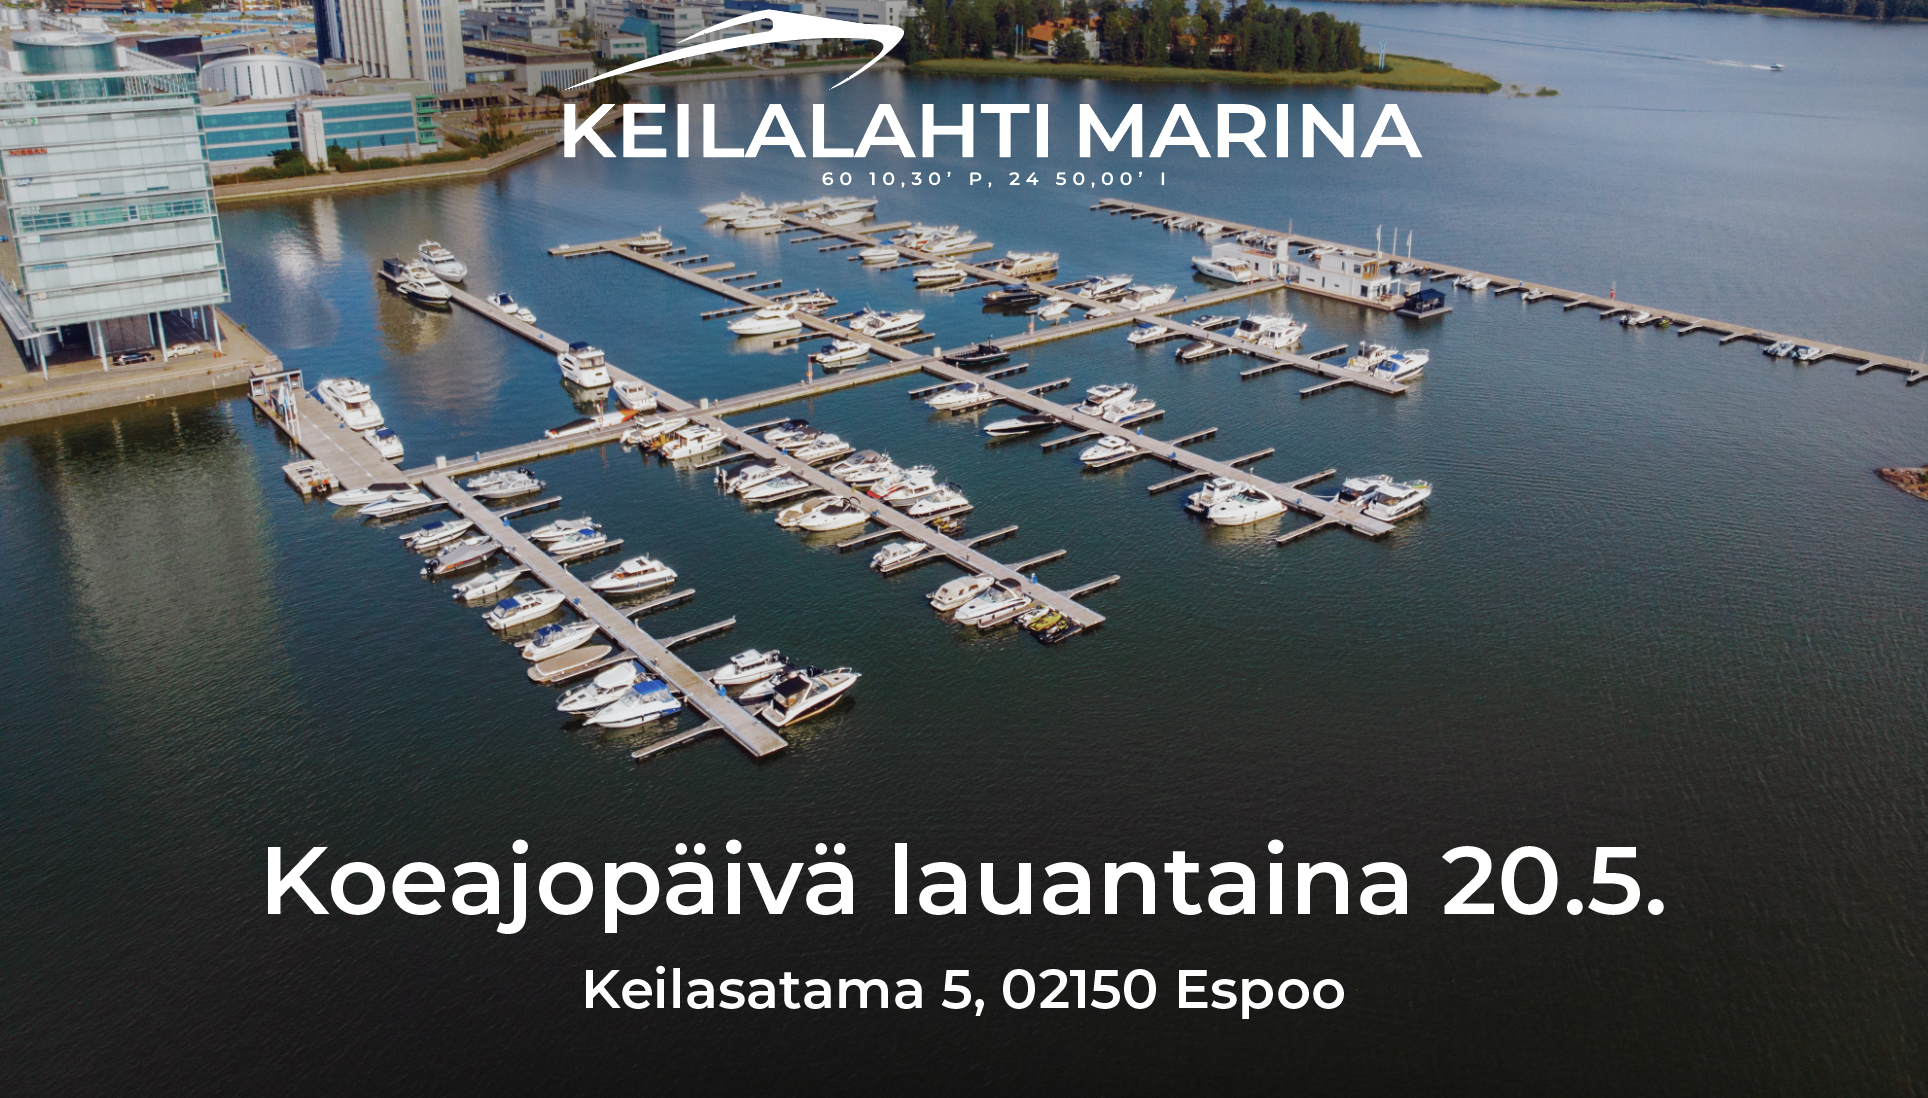 Koeajopäivä Espoon Keilalahti Marinassa 20.5. Koeajettavana Suomen suosituimmat venemerkit!